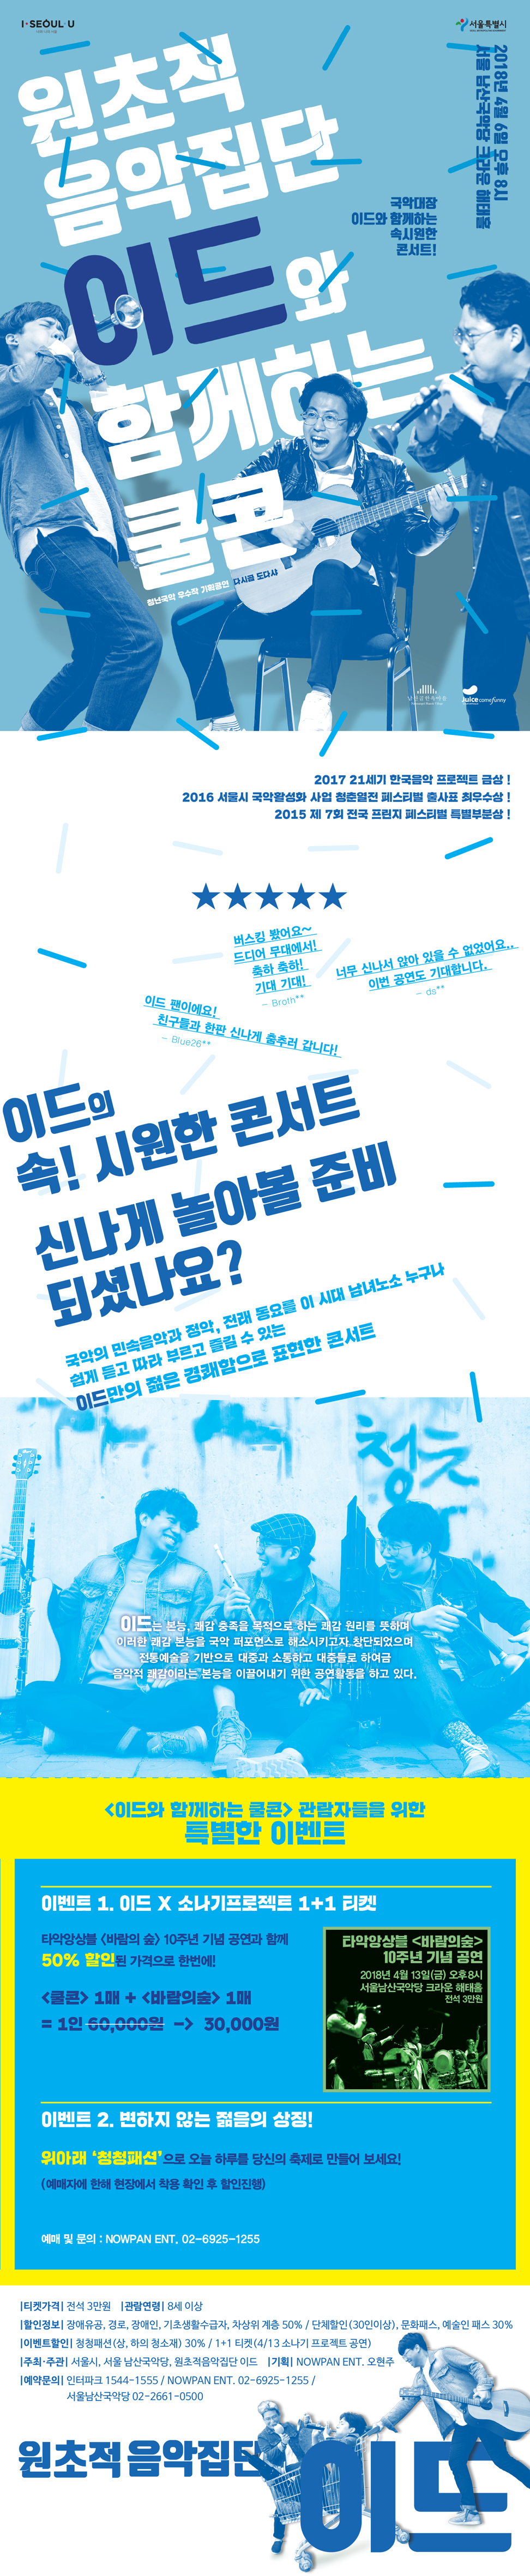 국악대장! 원초적음악집단 이드와 함께하는 쿨 콘서트! (Cool Concert) 이미지